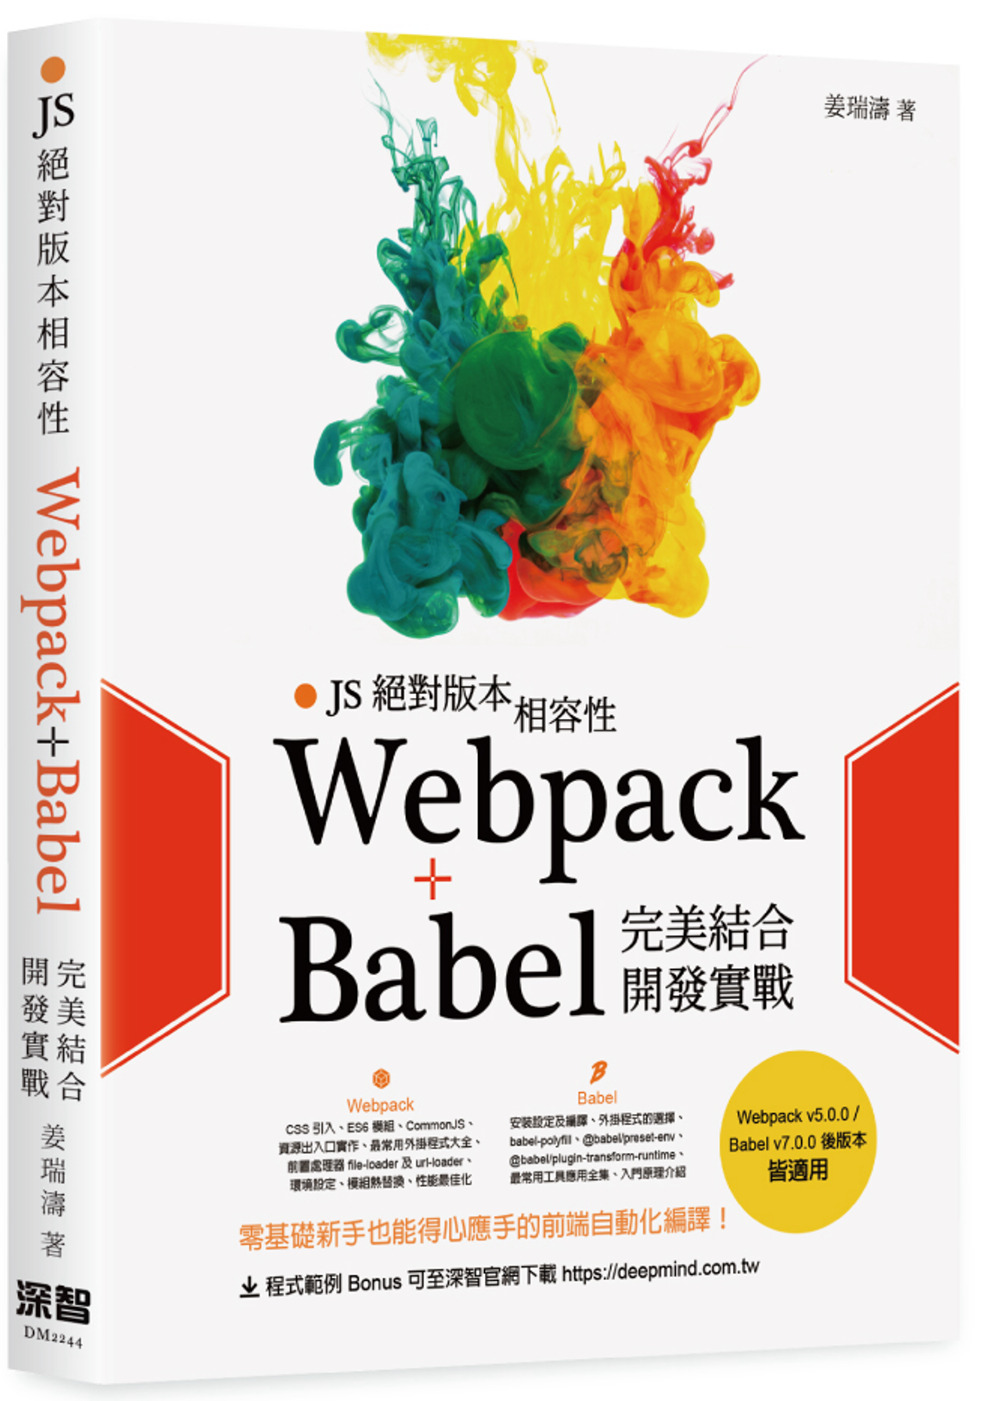 JS絕對版本相容性：Webpack+Babel完美結合開發實...